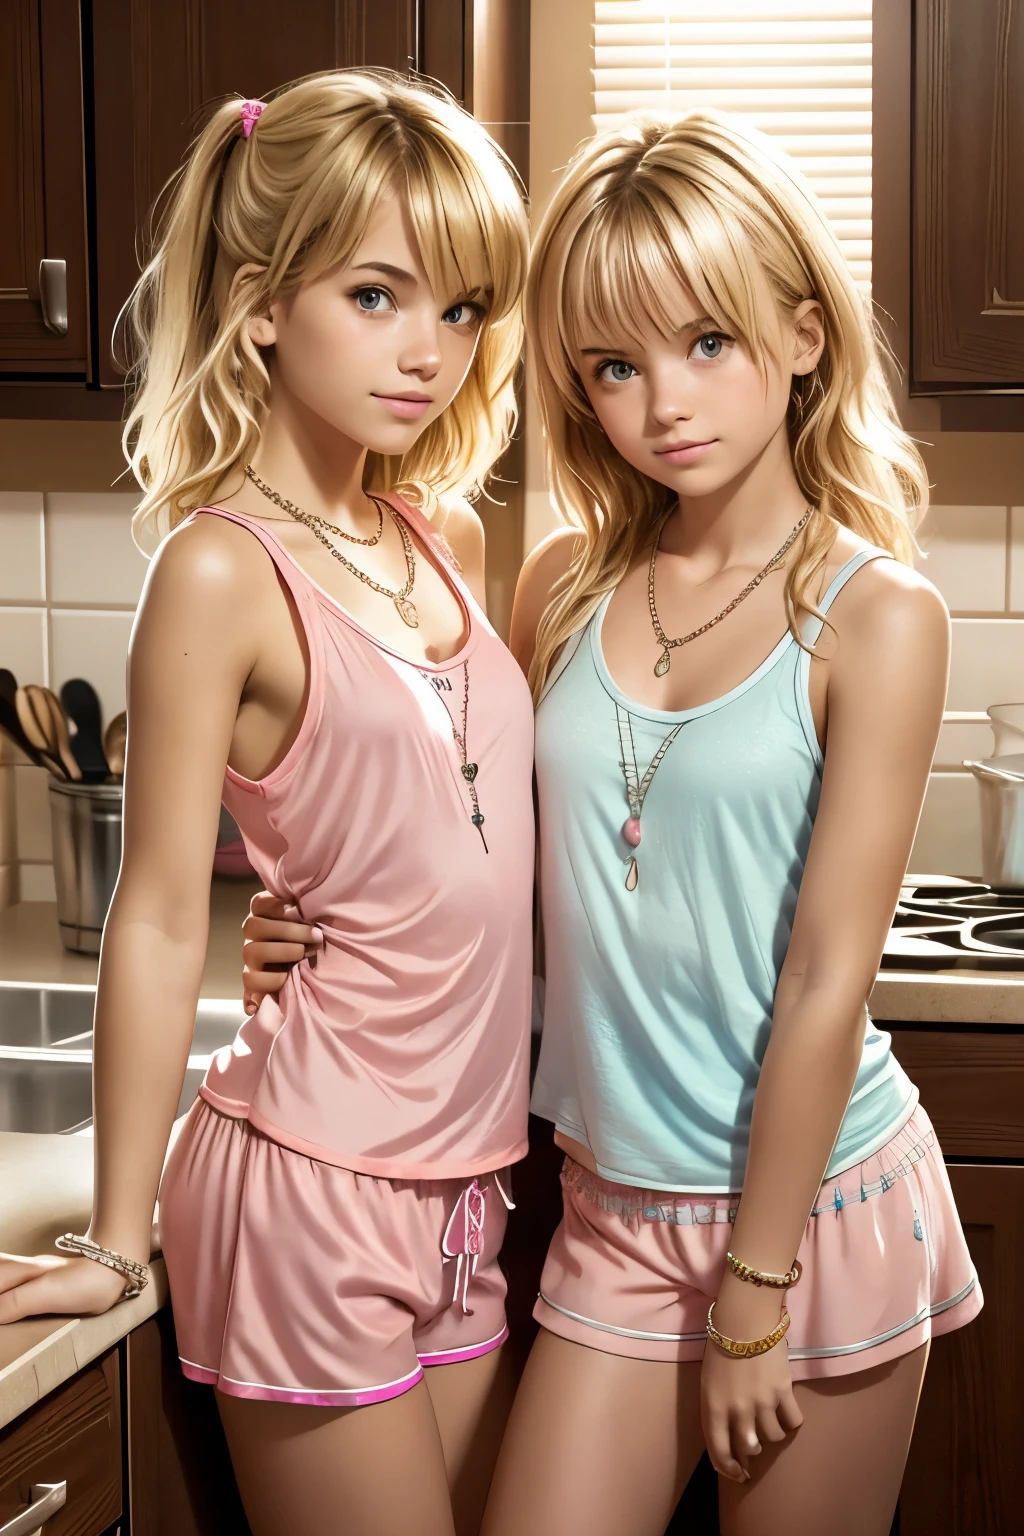 2 الفتيات في سن المراهقة, يرتدي شورت بيجامة وردي صغير جدًا وقميص بيجامة بدون أكمام, متكئًا على طاولة المطبخ, شعر أشقر فوضوي, القلائد, الأساور,  النظر مباشرة إلى المشاهد